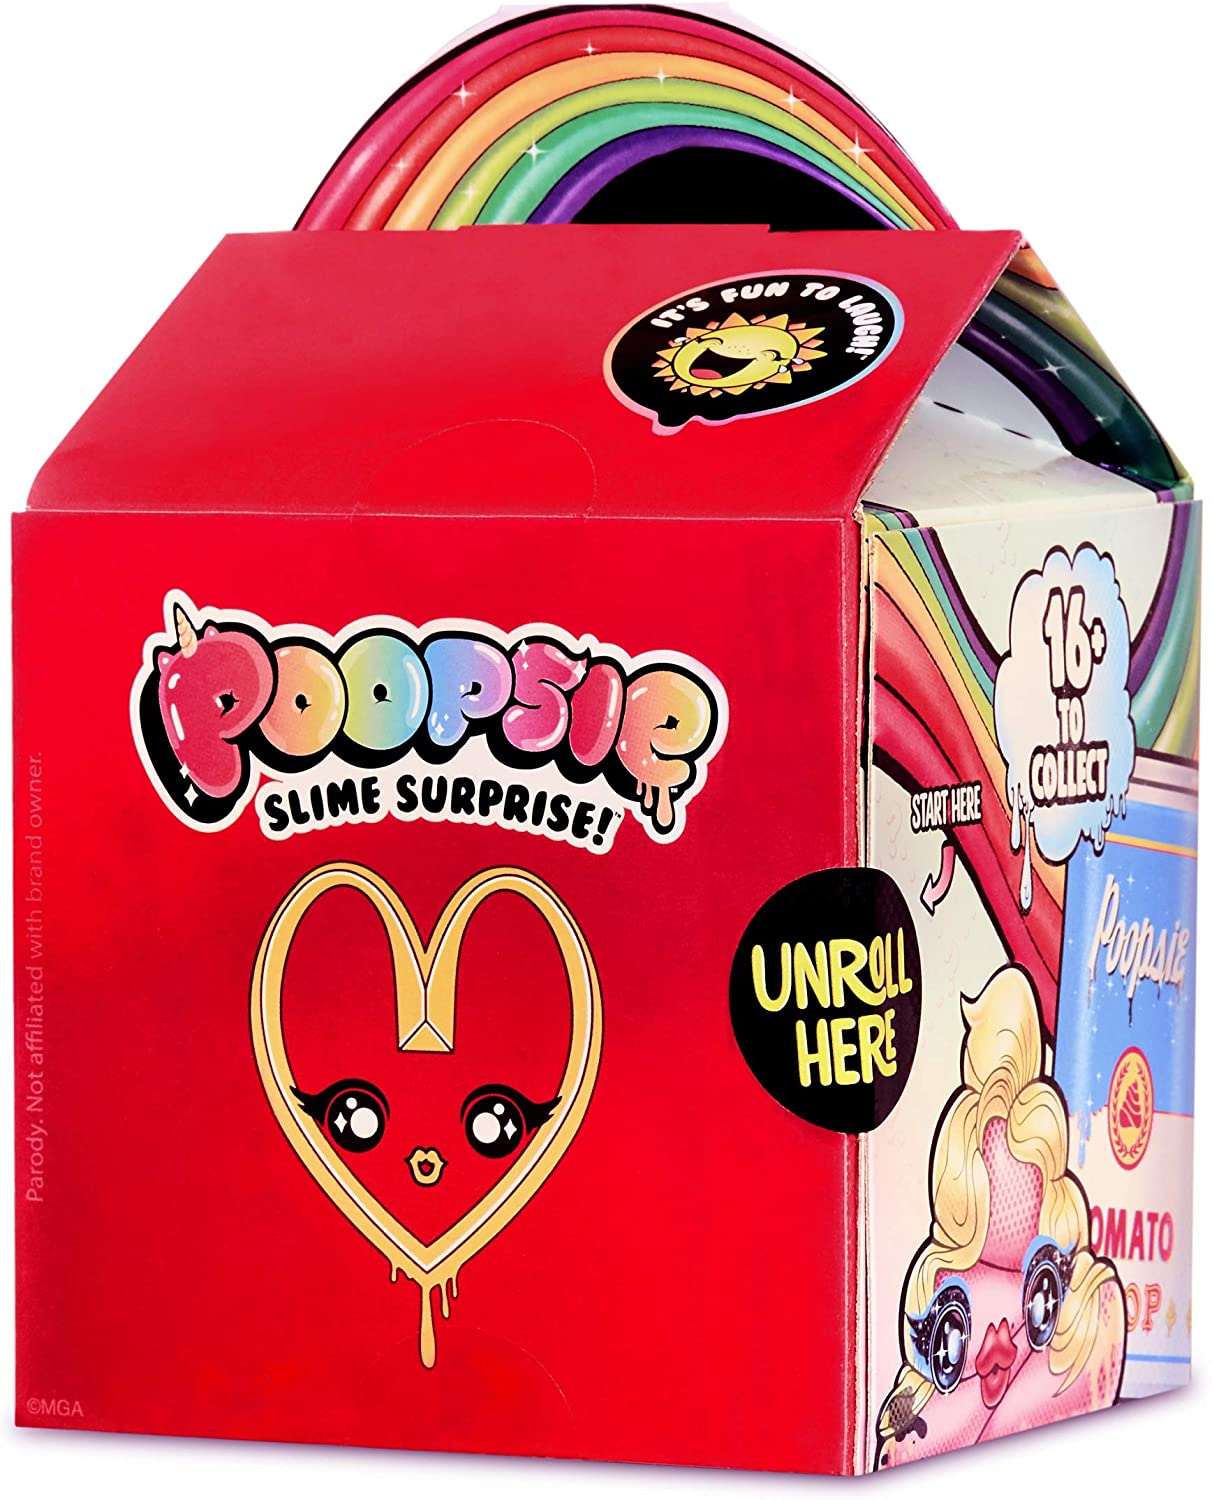 Poopsie Aged 6 Plus Poopsie Slime Surprise Poop Packs Toy